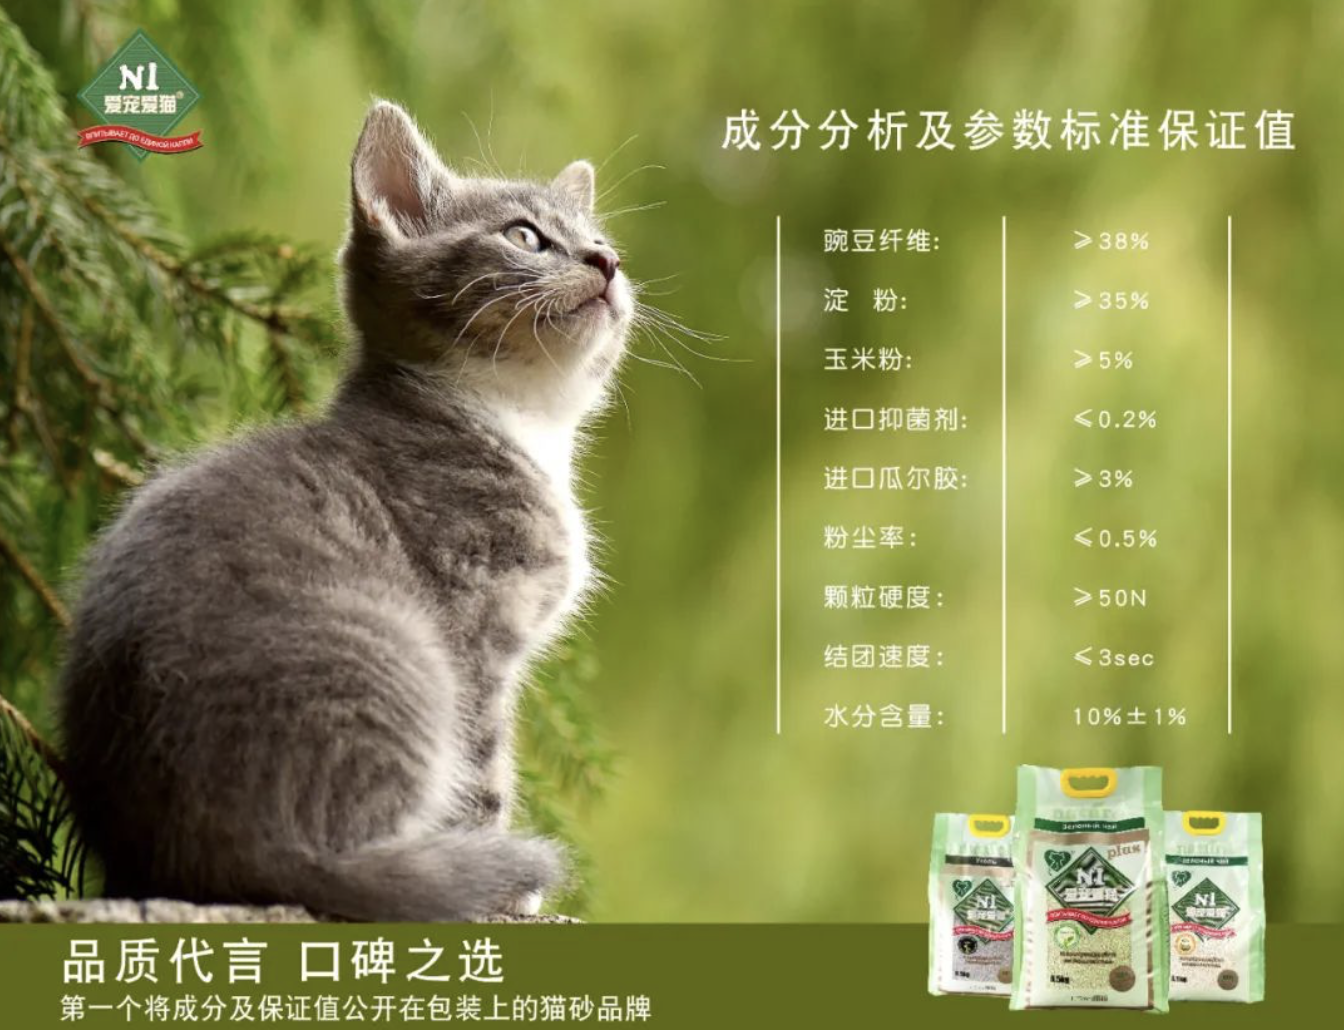 荆州爱宠爱猫： N1猫砂新包装会公布成分保证值，坚持做猫砂行业引领者(图1)